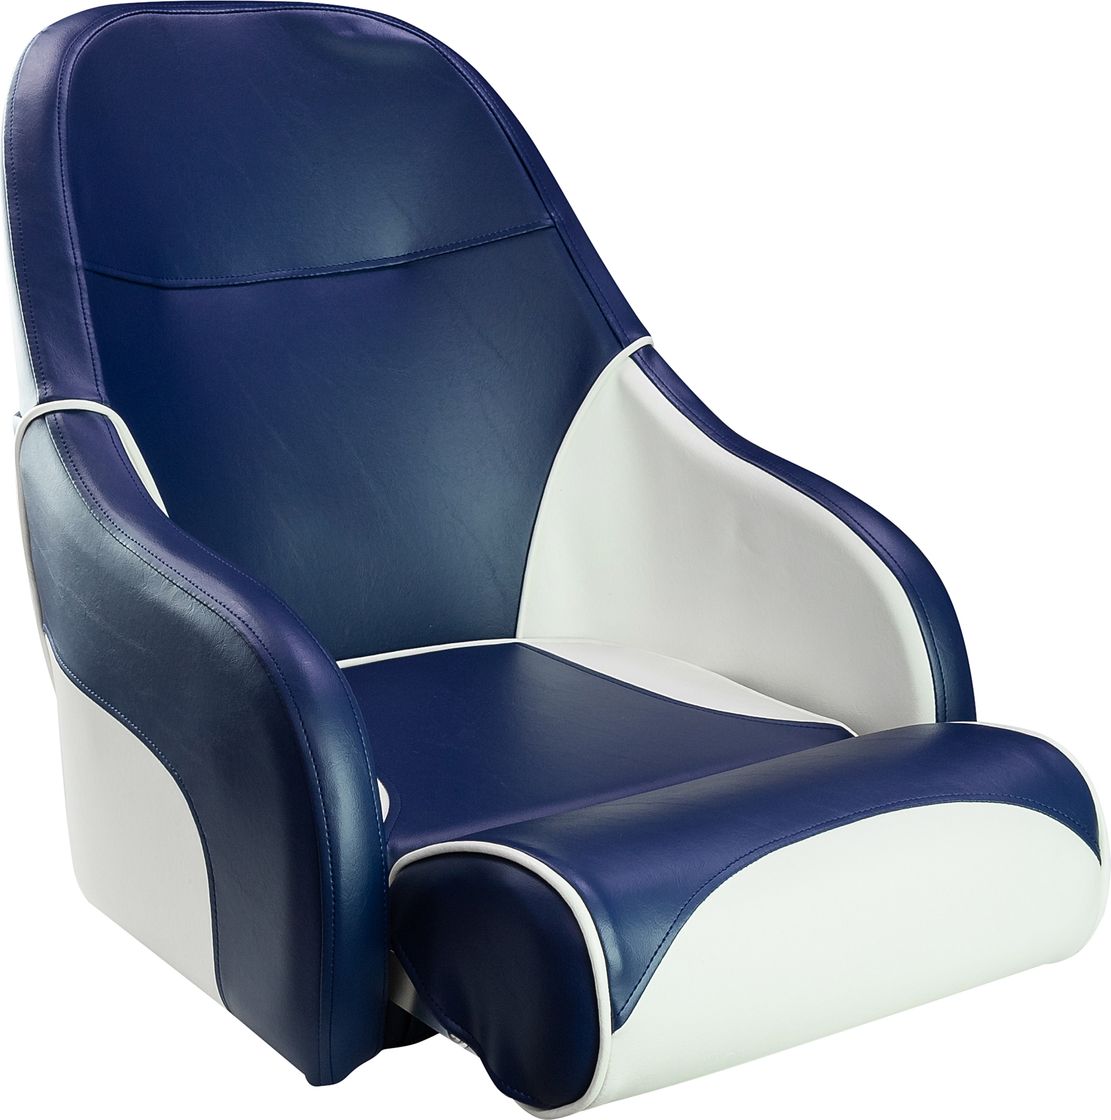 Кресло с болстером Ocean Flip Up, обивка синий/белый винил 13127WB-MR